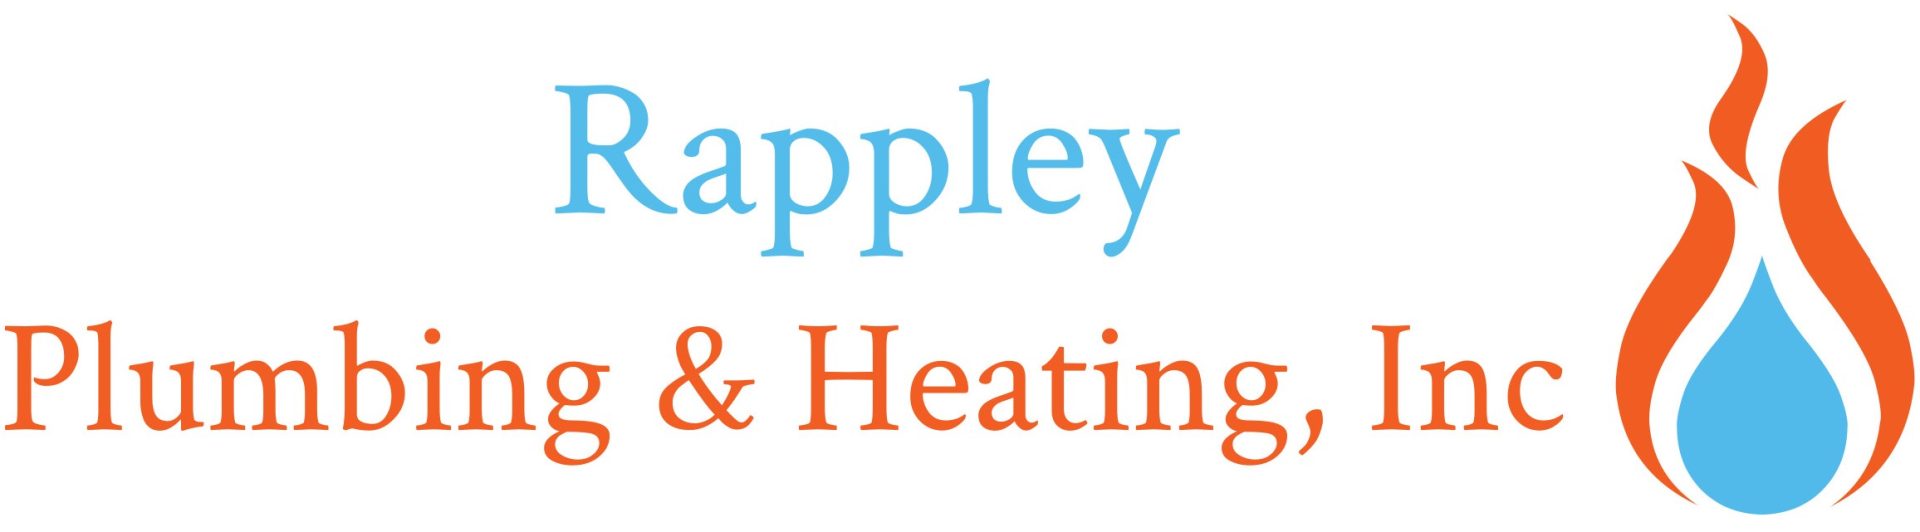 Rappley Plumbing & Heating